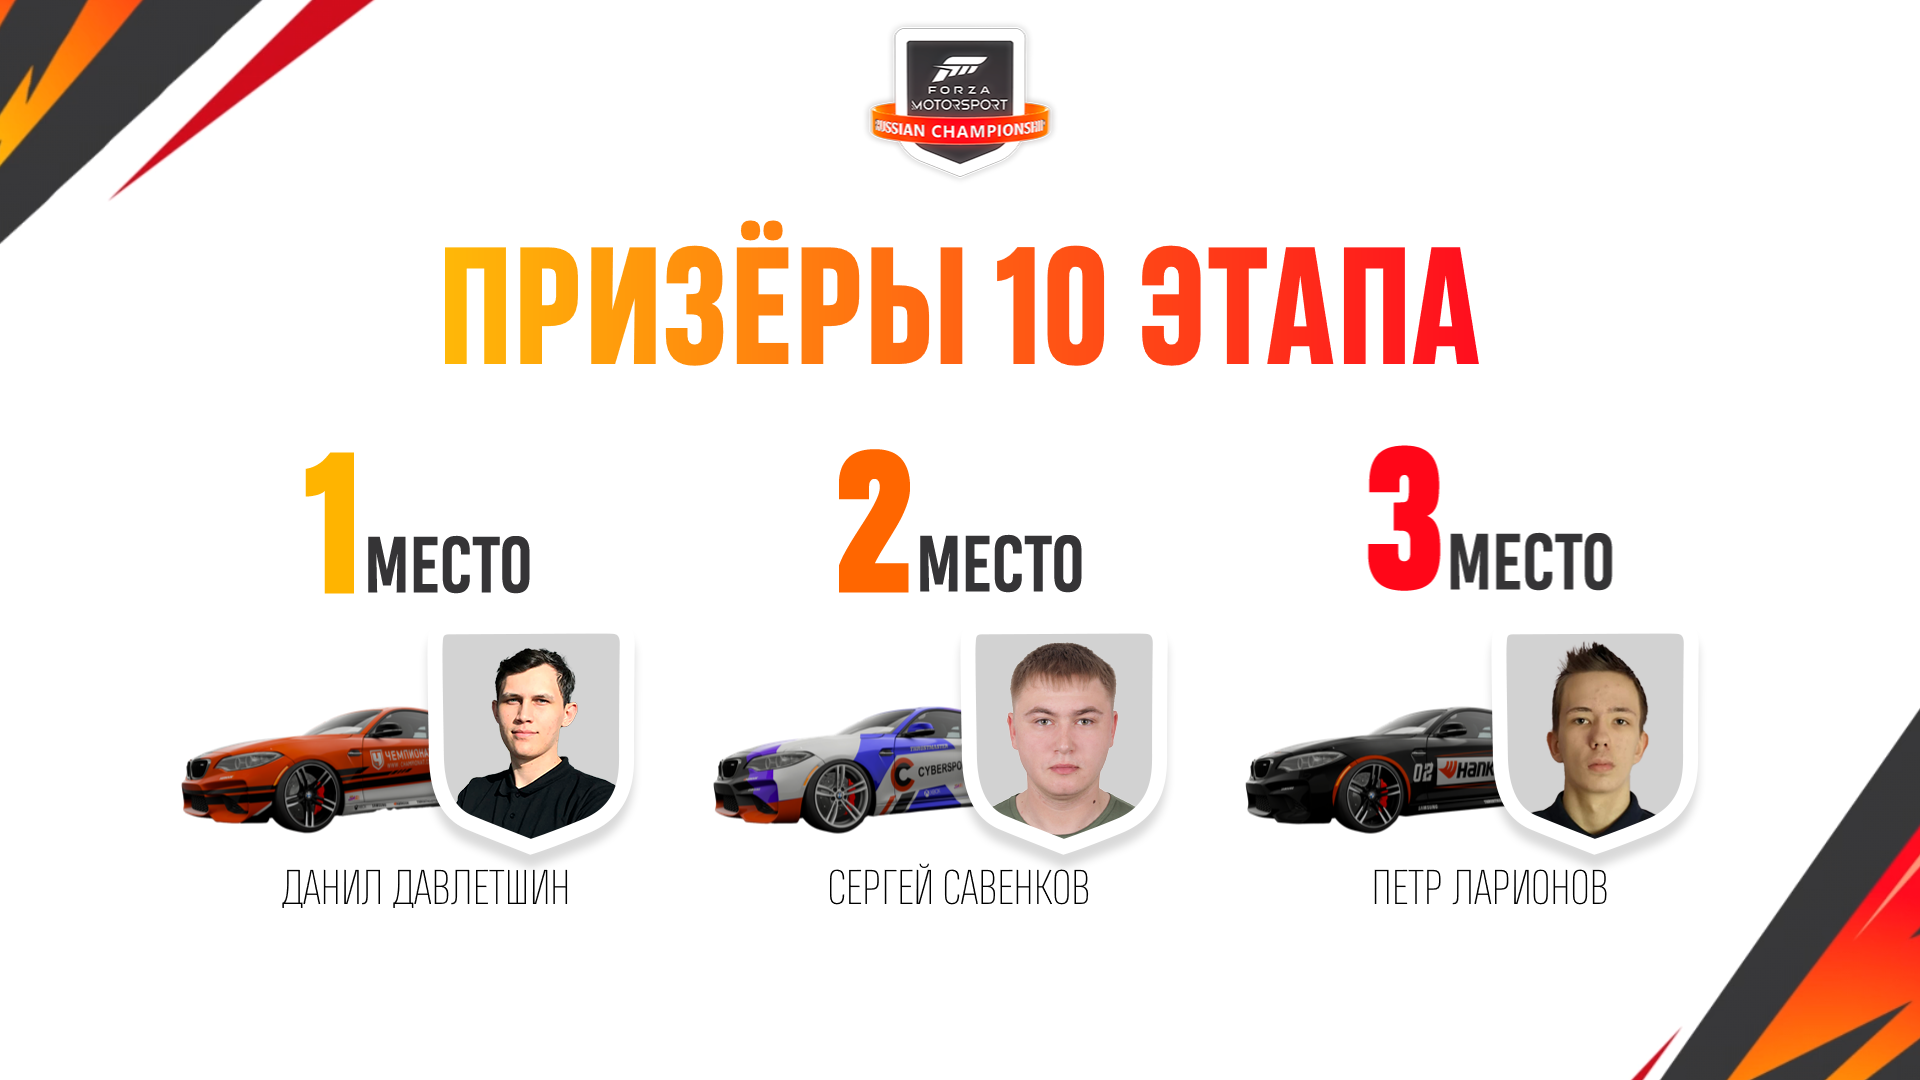 Симрейсер из Казани выиграл десятый этап чемпионата Forza Motorsport и получил последний слот в гранд-финале